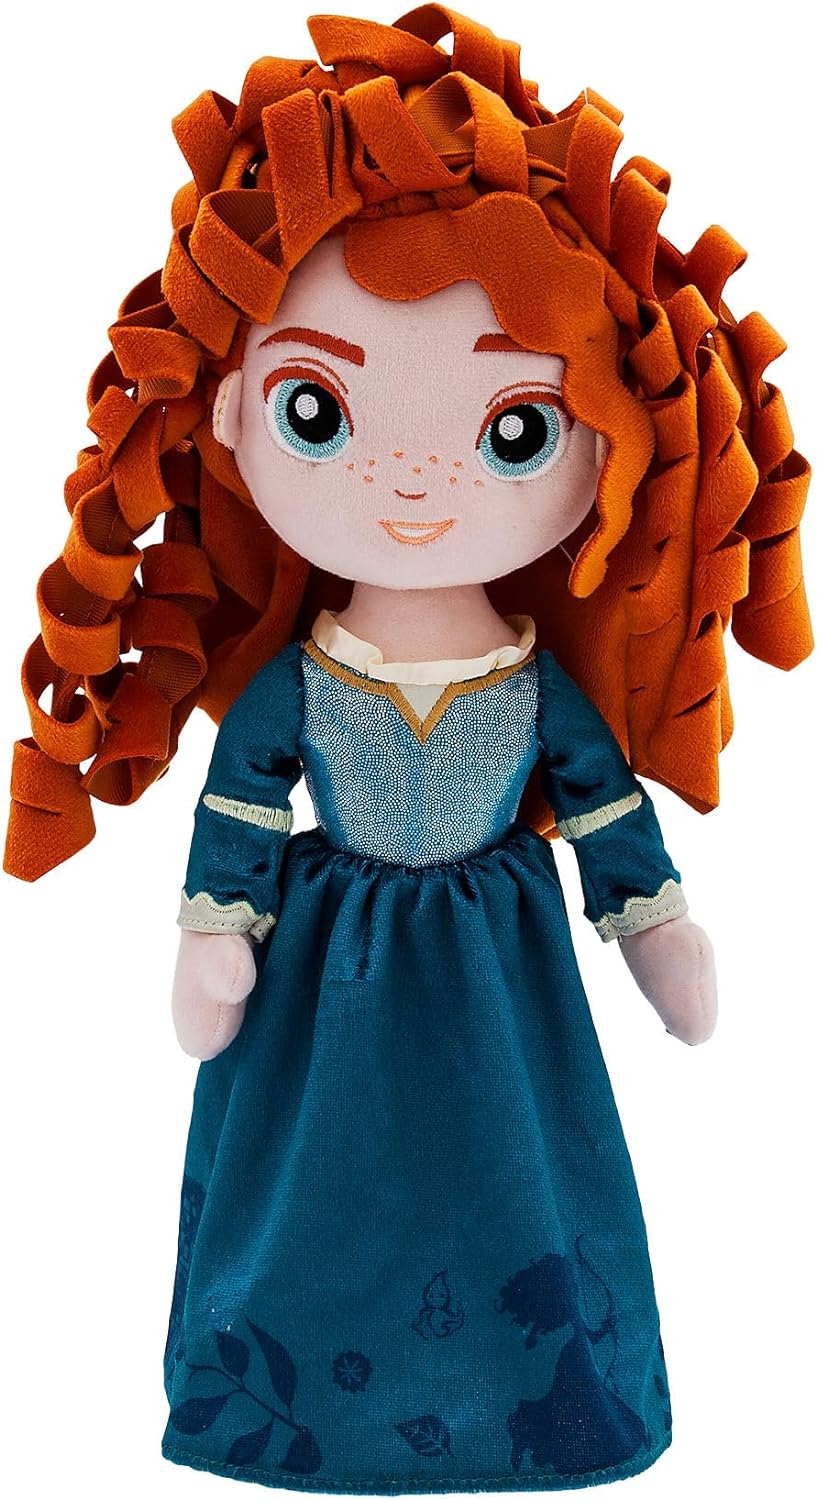 Disney Store Brave - Merida 35cm Soft Plush Toy Doll